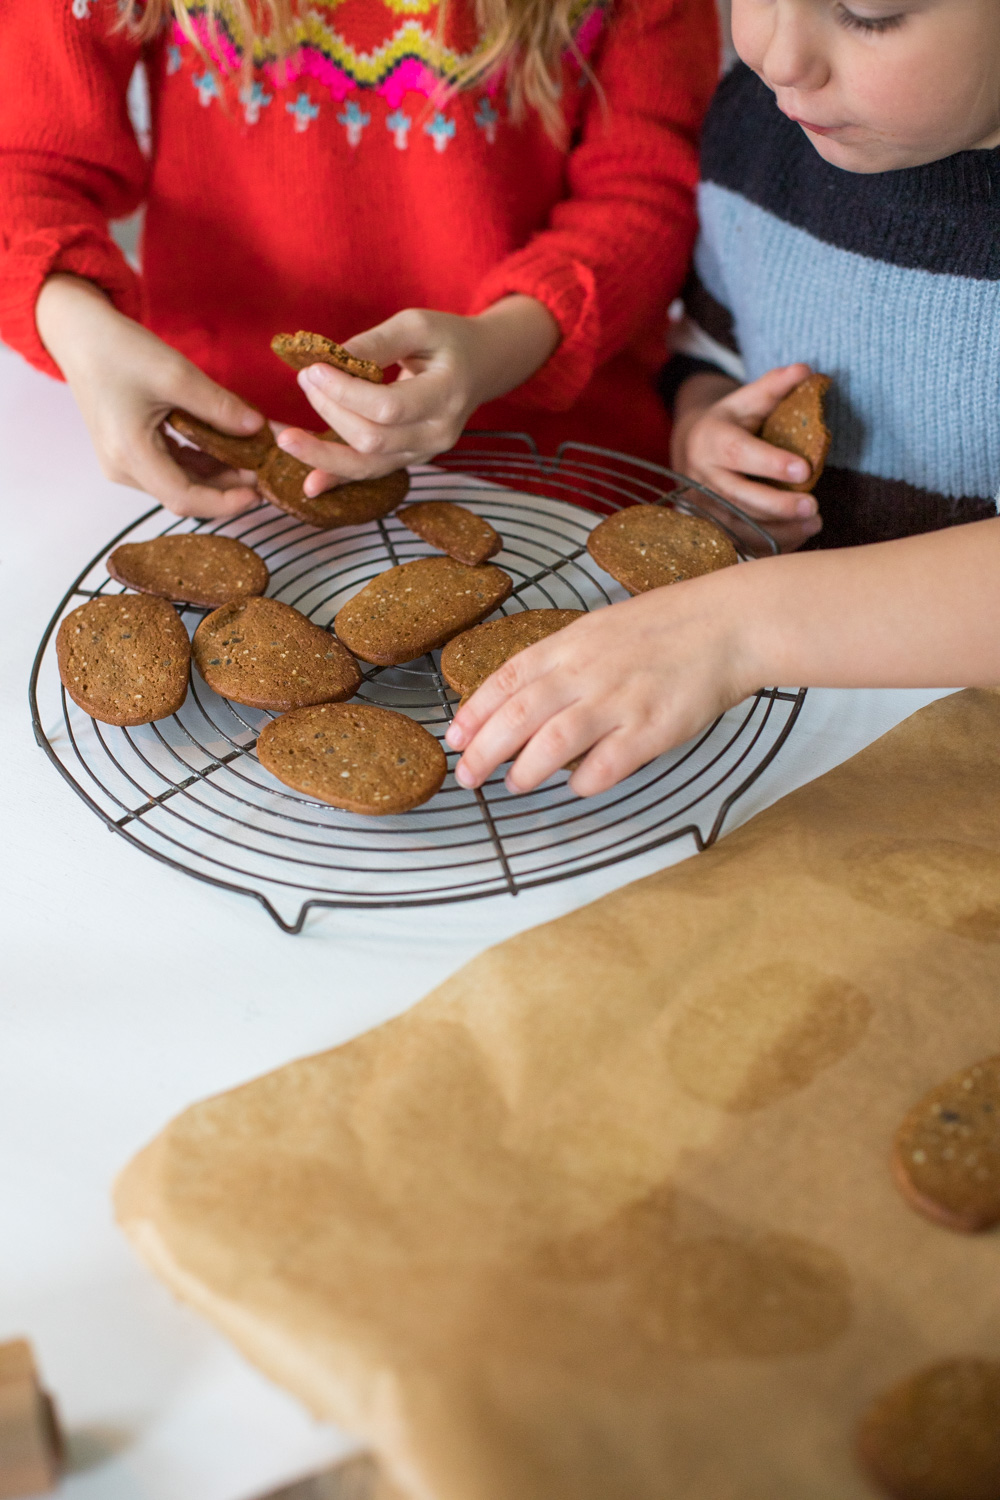 Zeit zum Kekse backen: Hier kommt das Rezept für knusprige Braune Kuchen die nicht nur in der Weihnachtszeit köstlich schmecken! 